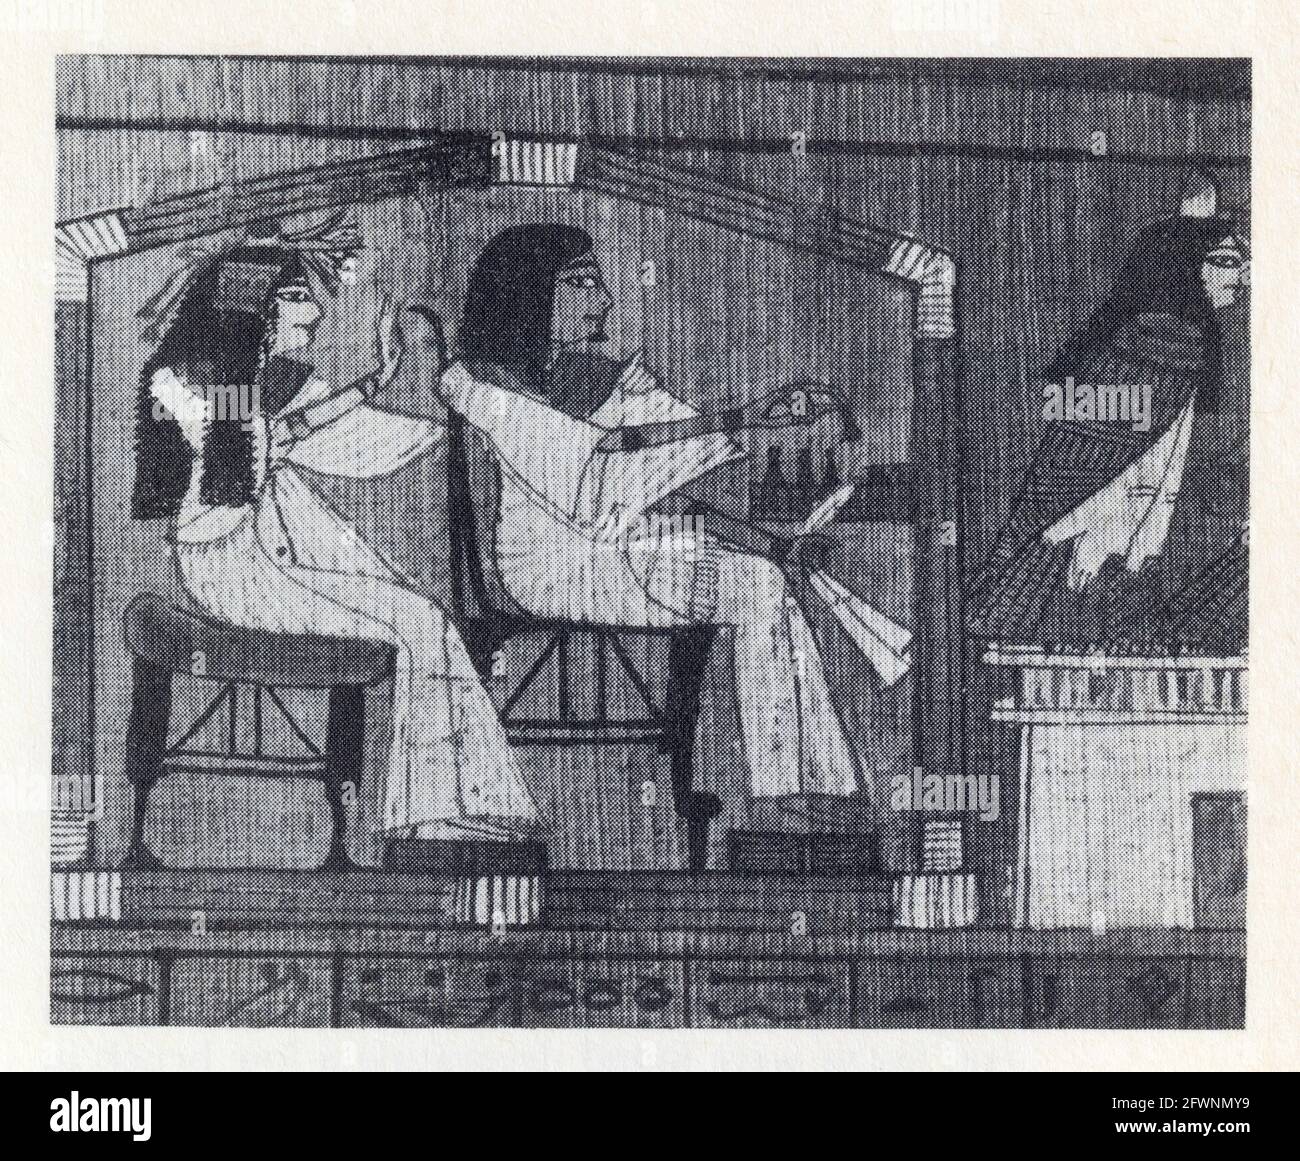 Der Drehbuchautor Ani spielt ein Brettspiel in Begleitung seiner Frau Tutu. XIX Dynastie. 1250 V. CHR Stockfoto